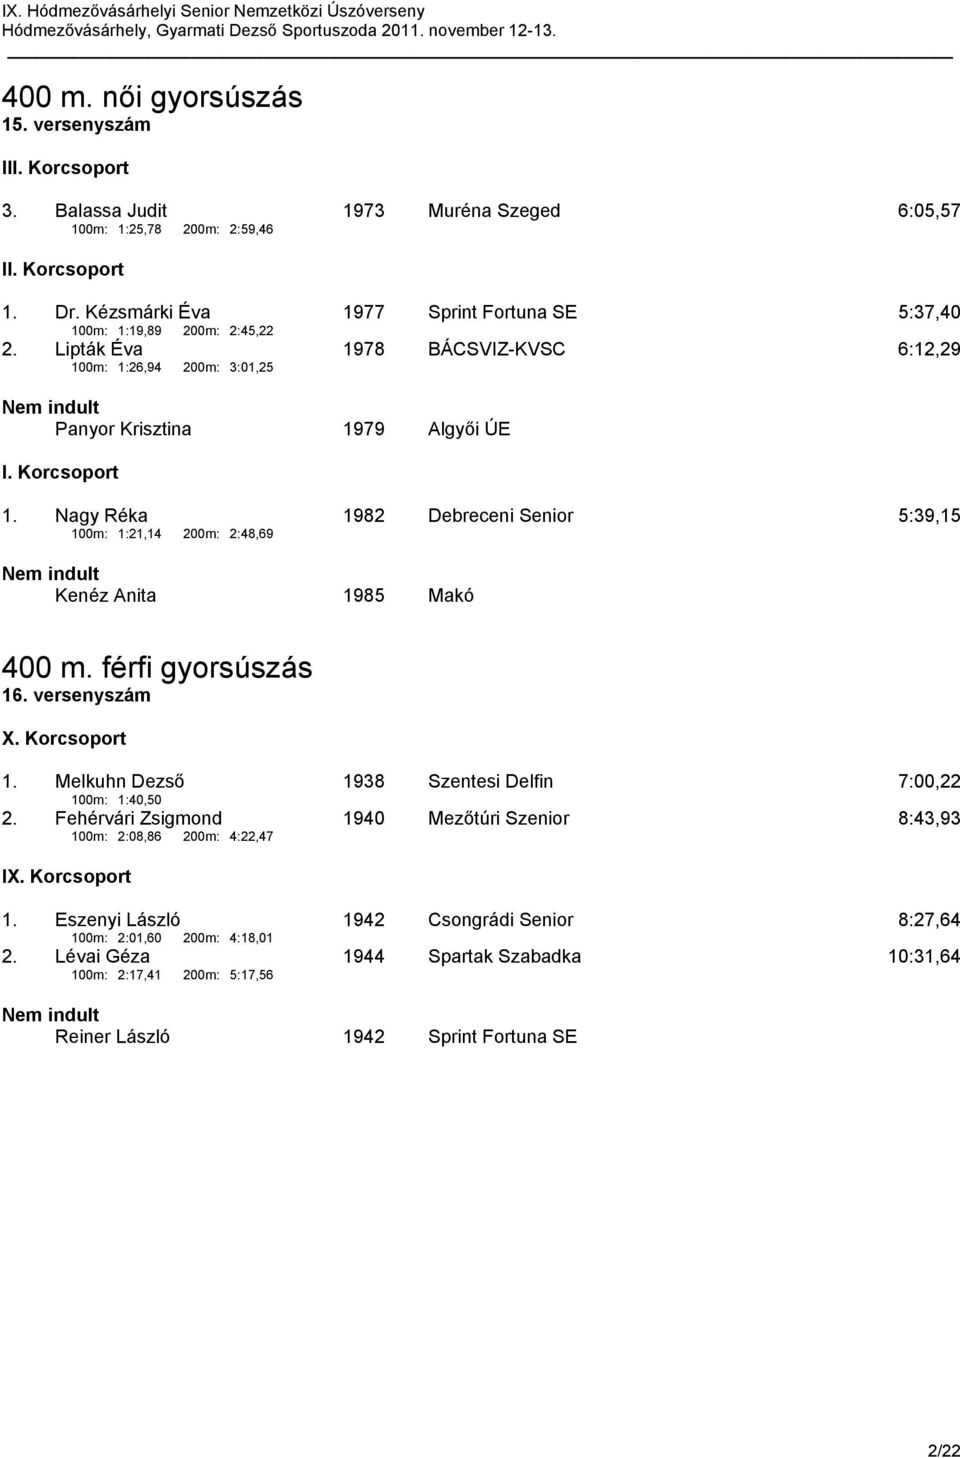 Nagy Réka 1982 Debreceni Senior 5:39,15 100m: 1:21,14 200m: 2:48,69 Kenéz Anita 1985 Makó 400 m. férfi gyorsúszás 16. versenyszám X. Korcsoport 1.